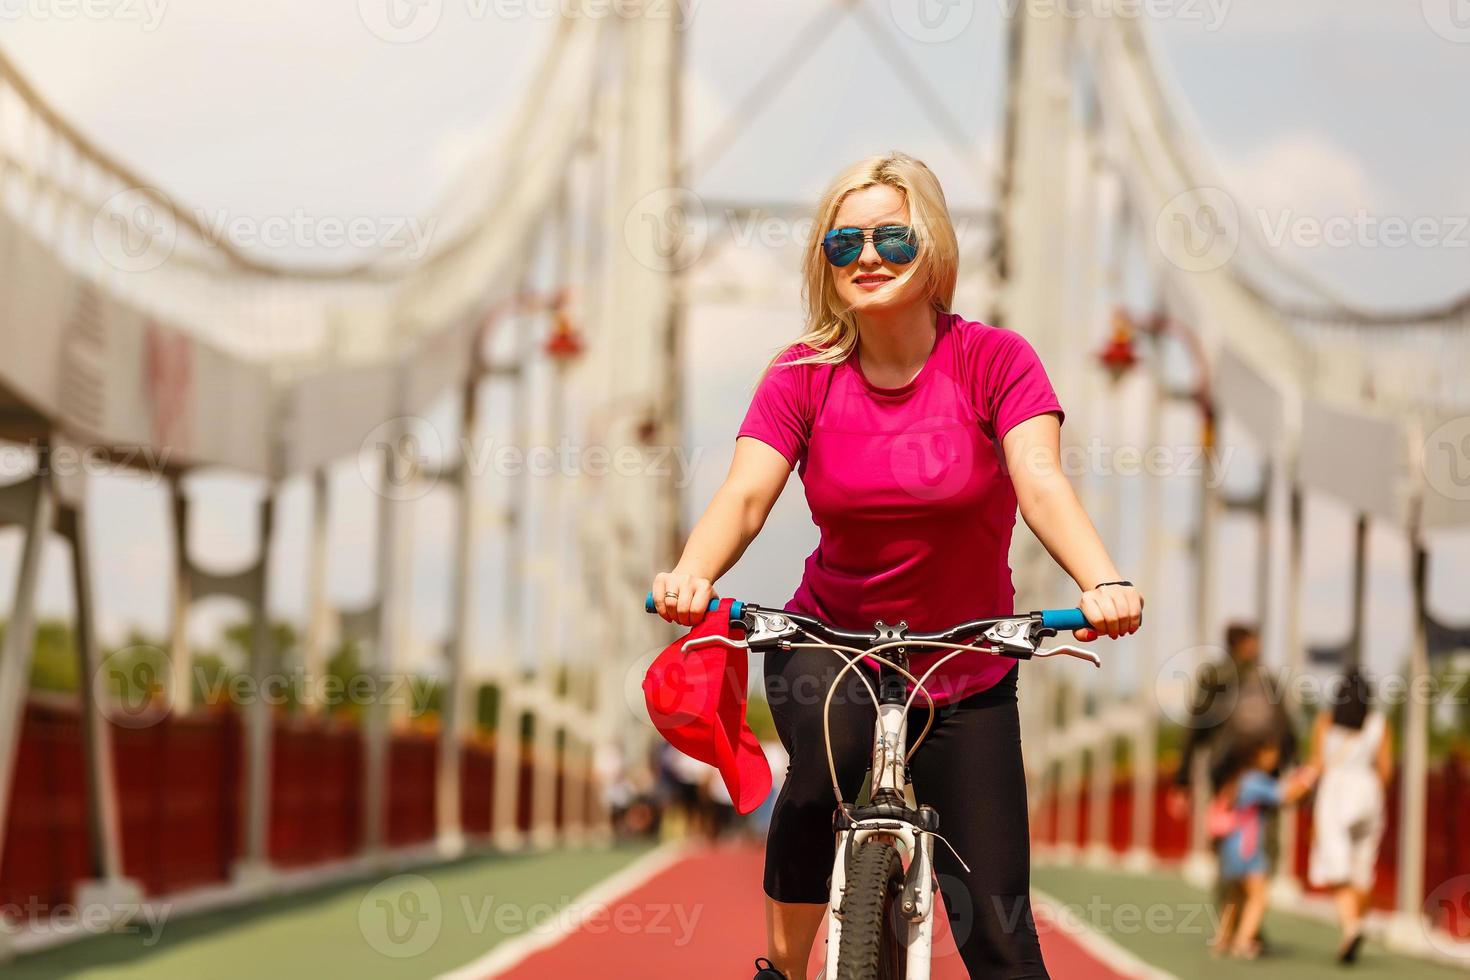 linda garota com cabelo loiro andando de bicicleta alegremente. retrato de jovem em j óculos de sol se divertindo, andando de bicicleta pelas ruas da cidade foto